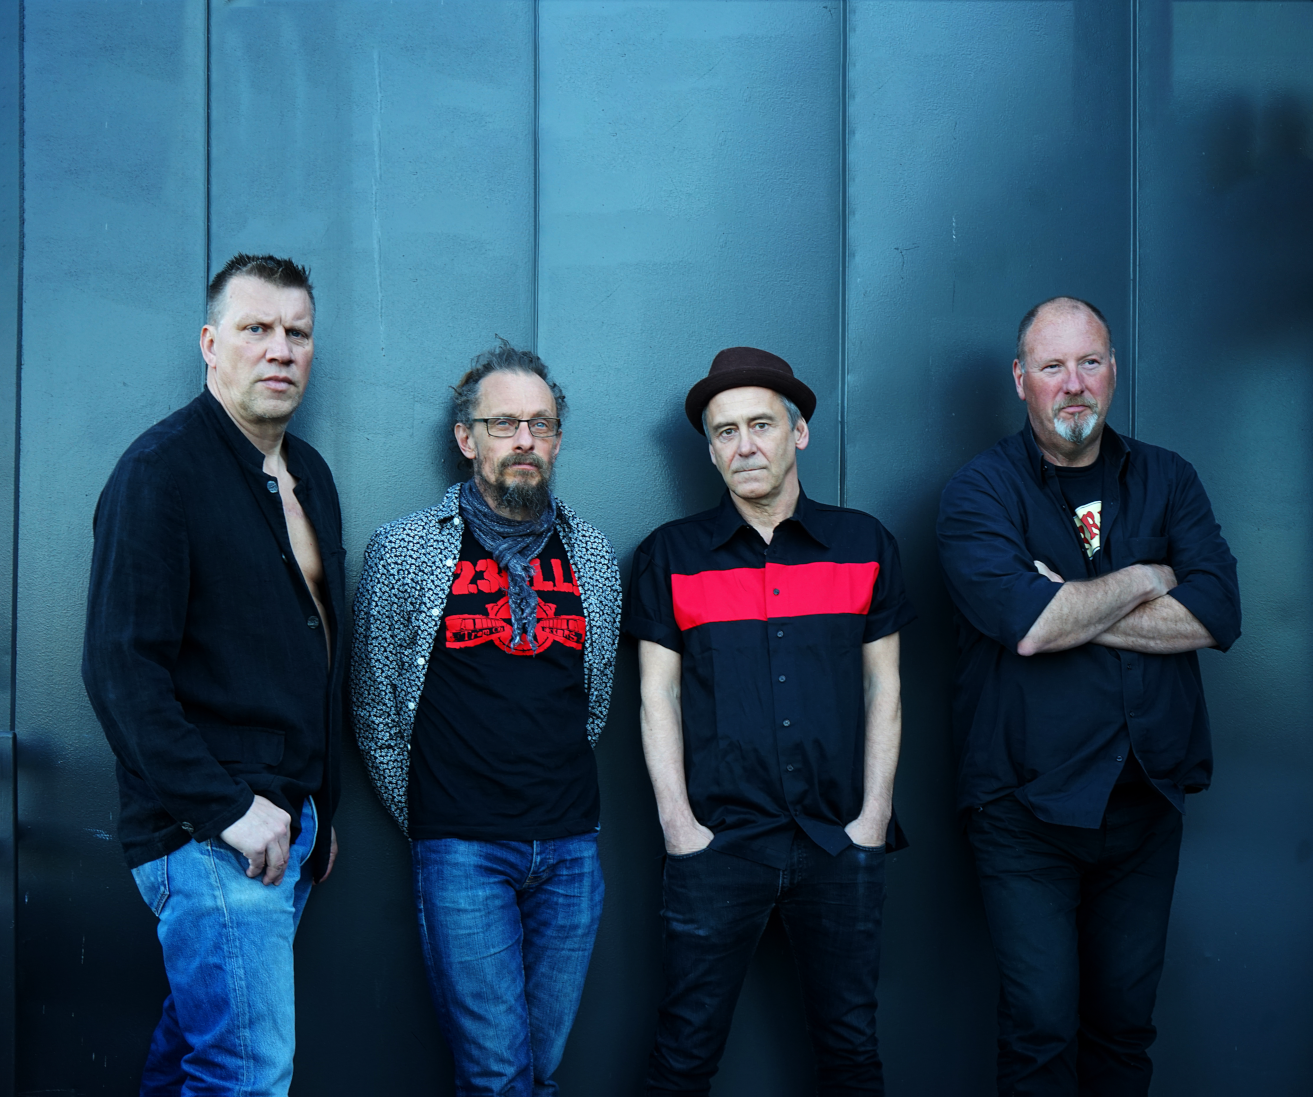 PREMIÄR: Svenska punkikoner släpper ny musik – 23 år senare